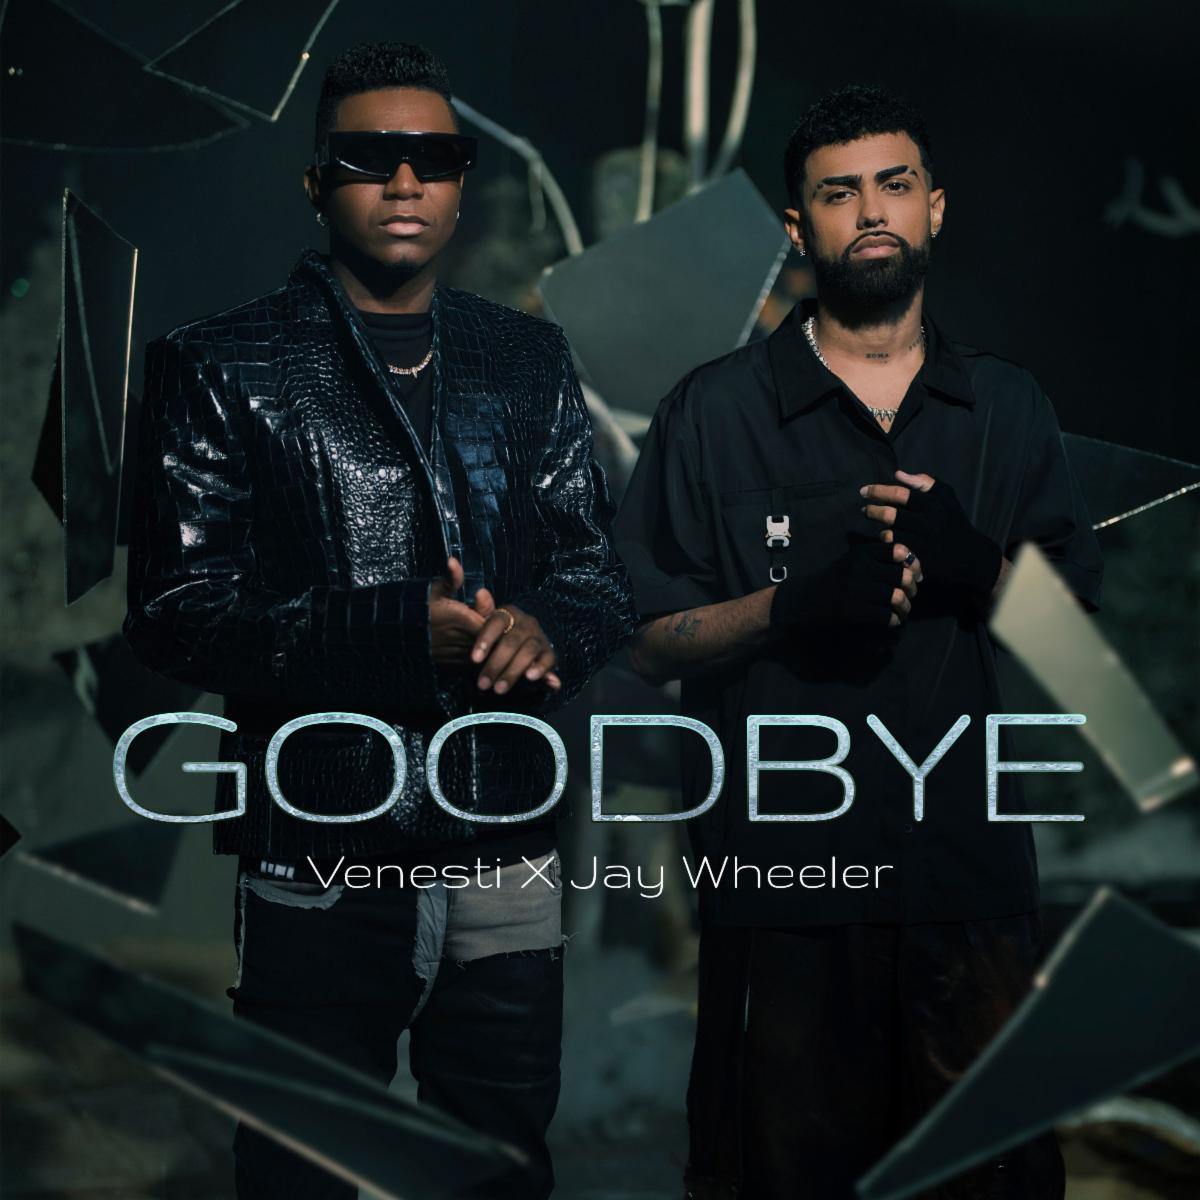 VENESTI junto a Jay Wheeler lanzan tema “Goodbye”